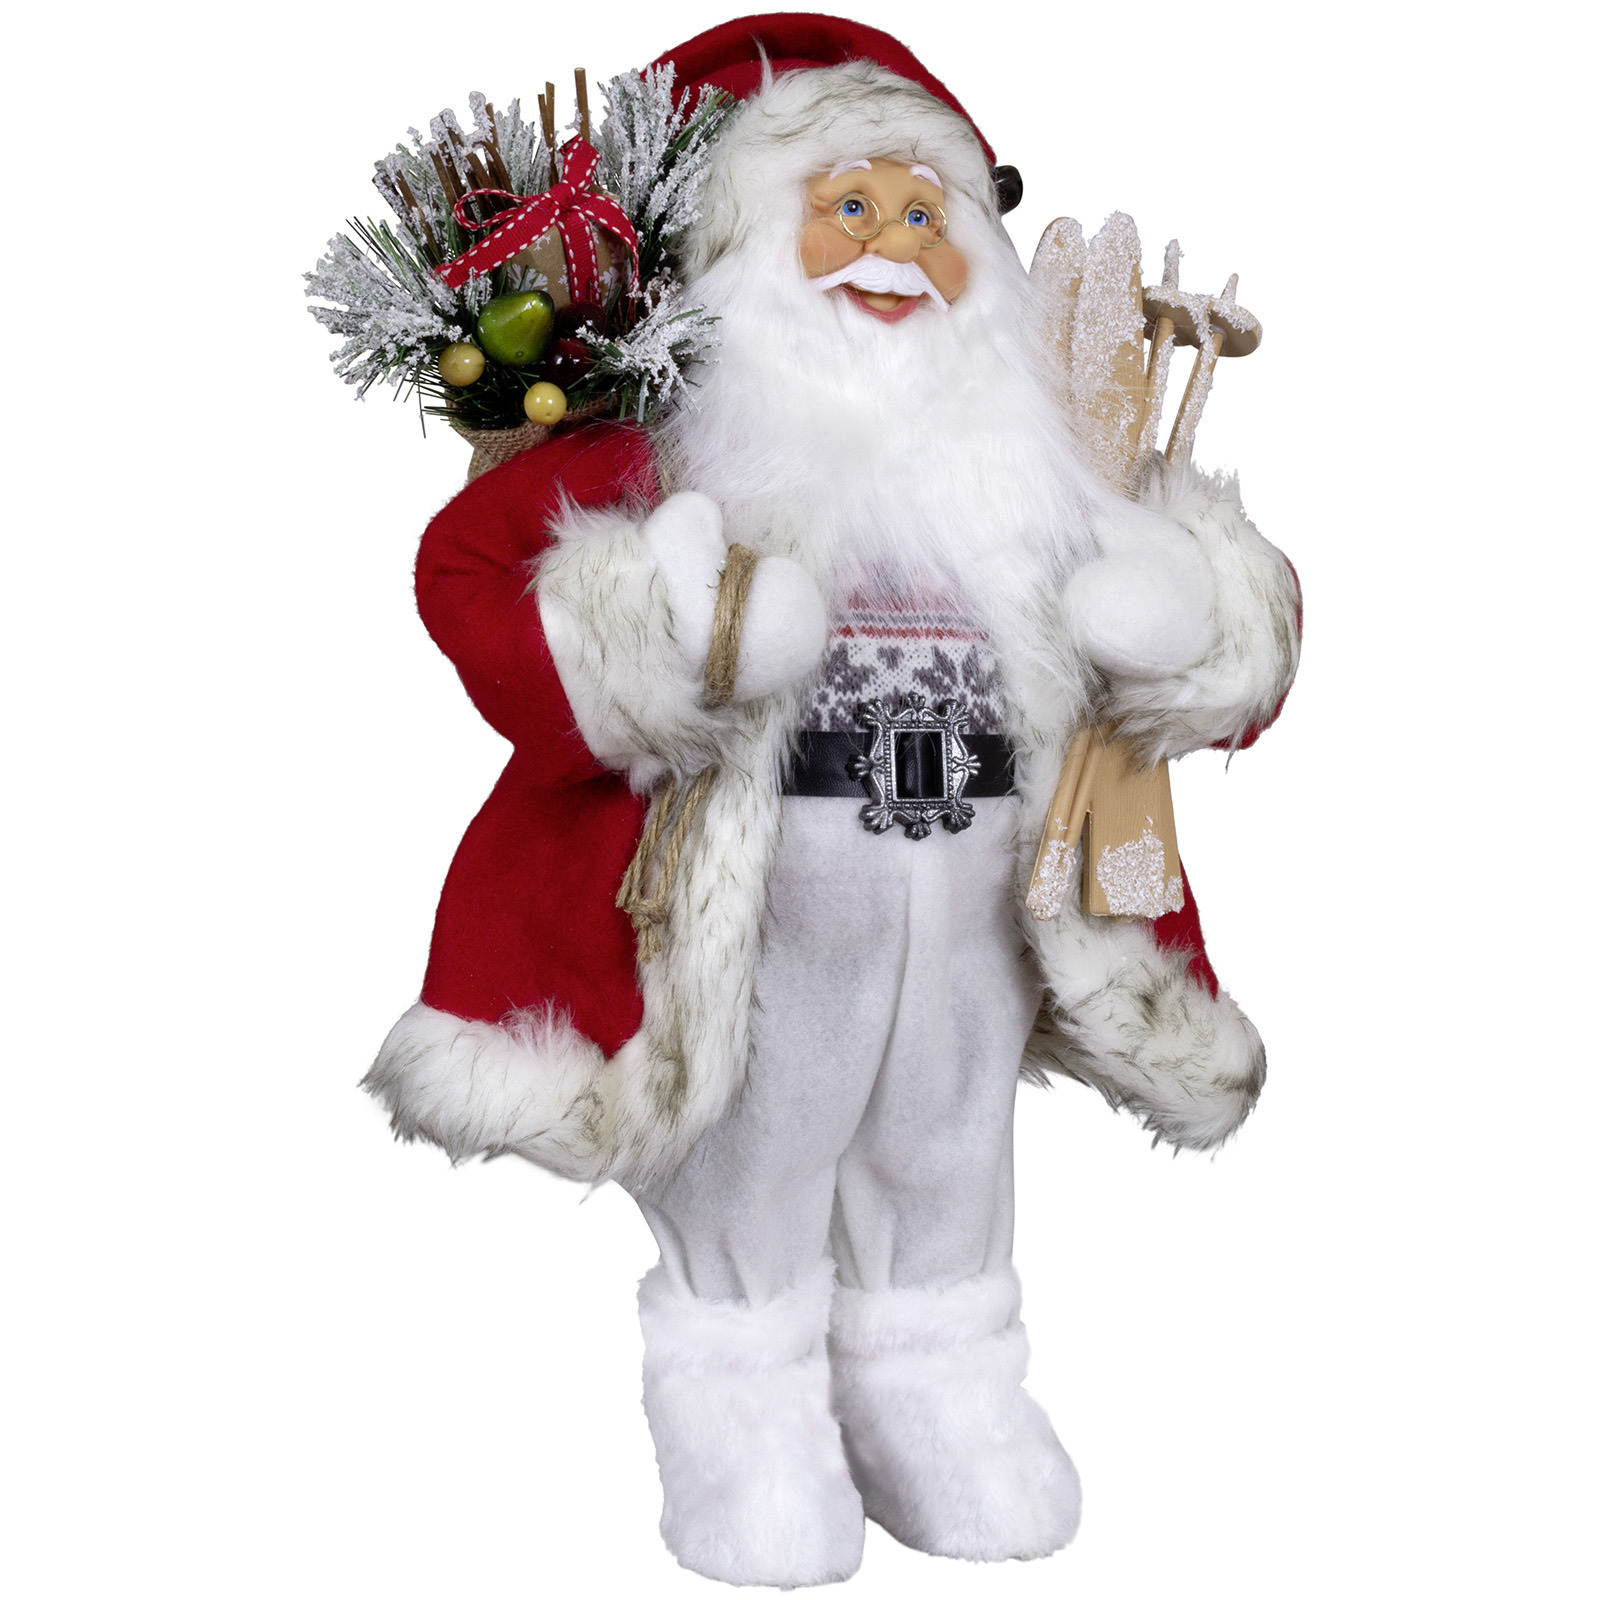 Kerstman pop Maarten H45 cm rood staand kerst beeld -decoratie figuur